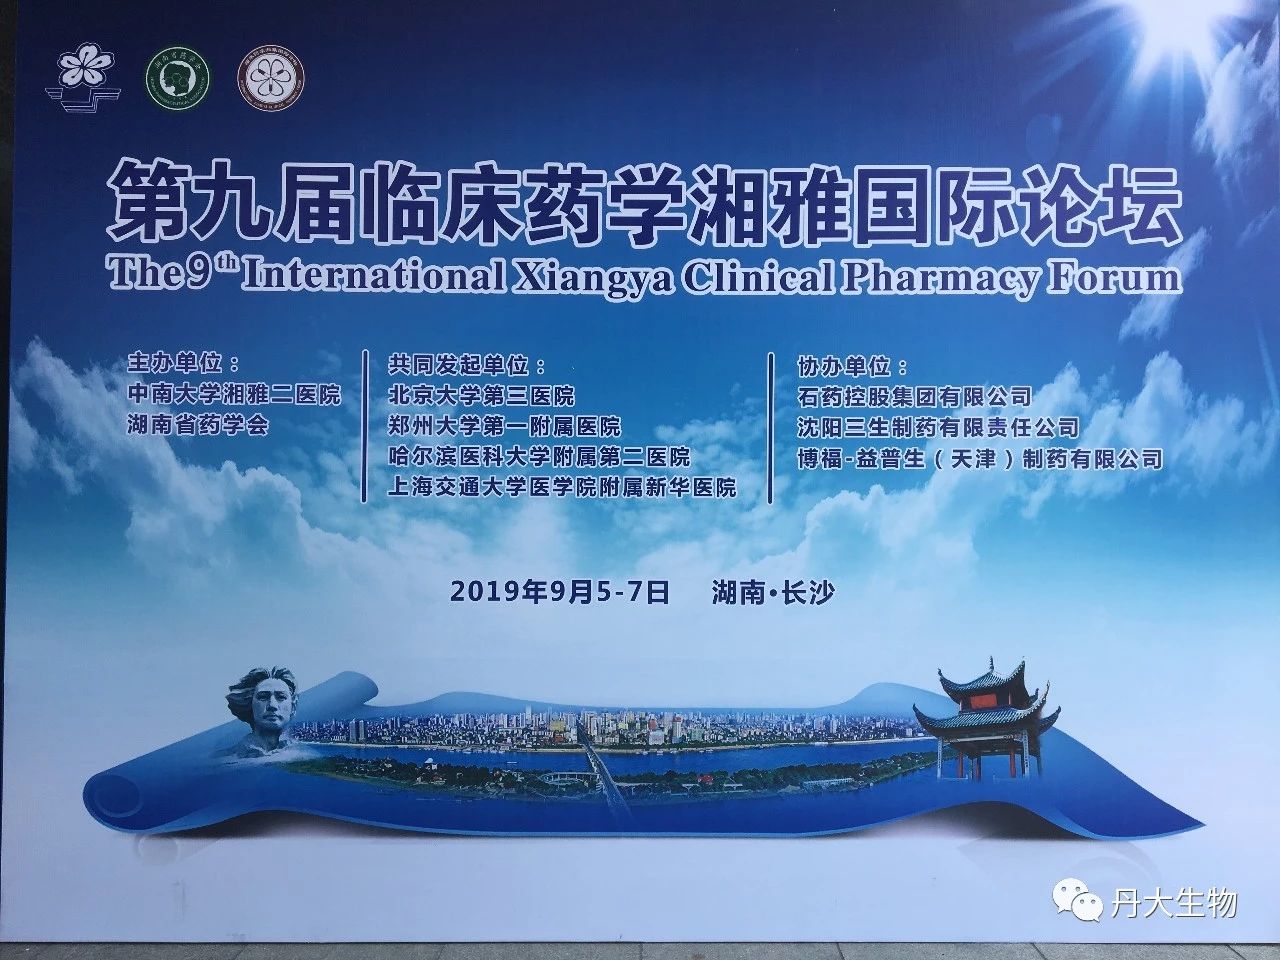 丹大創新專利TDM亮相第九屆臨床藥學湘雅國際論壇